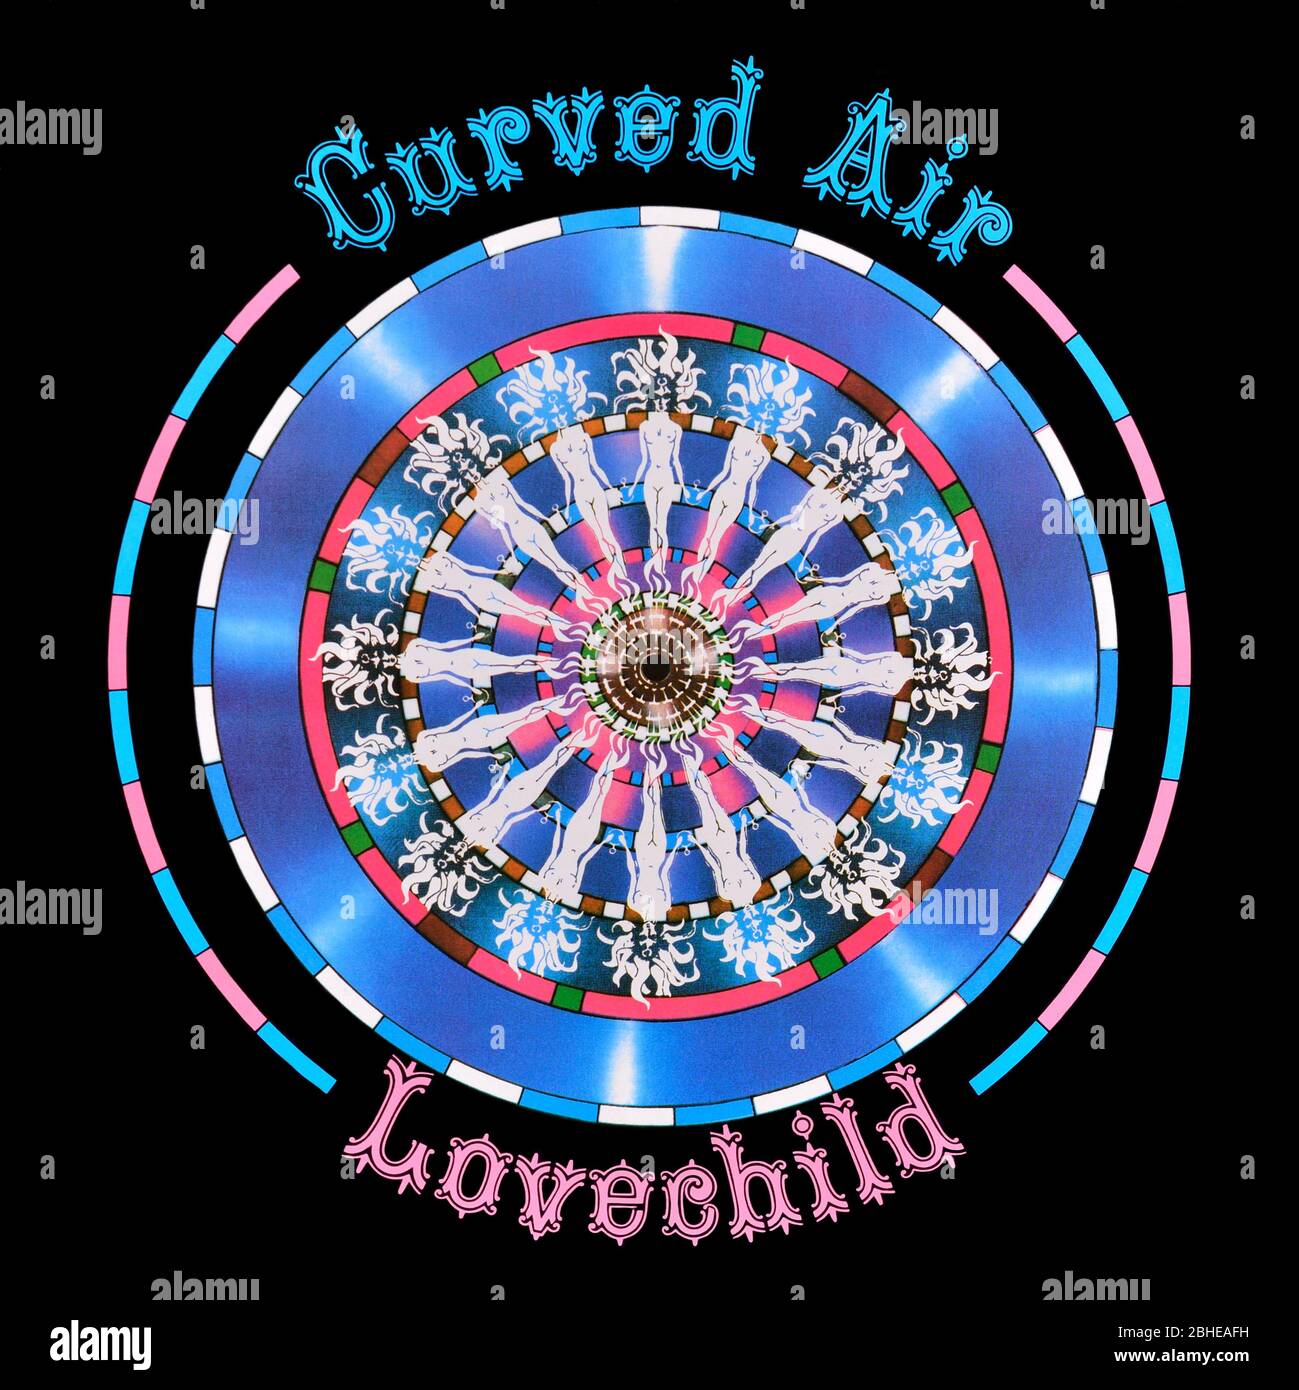 Curved Air - original Vinyl Album Cover - Lovechild - 1990 Stockfoto